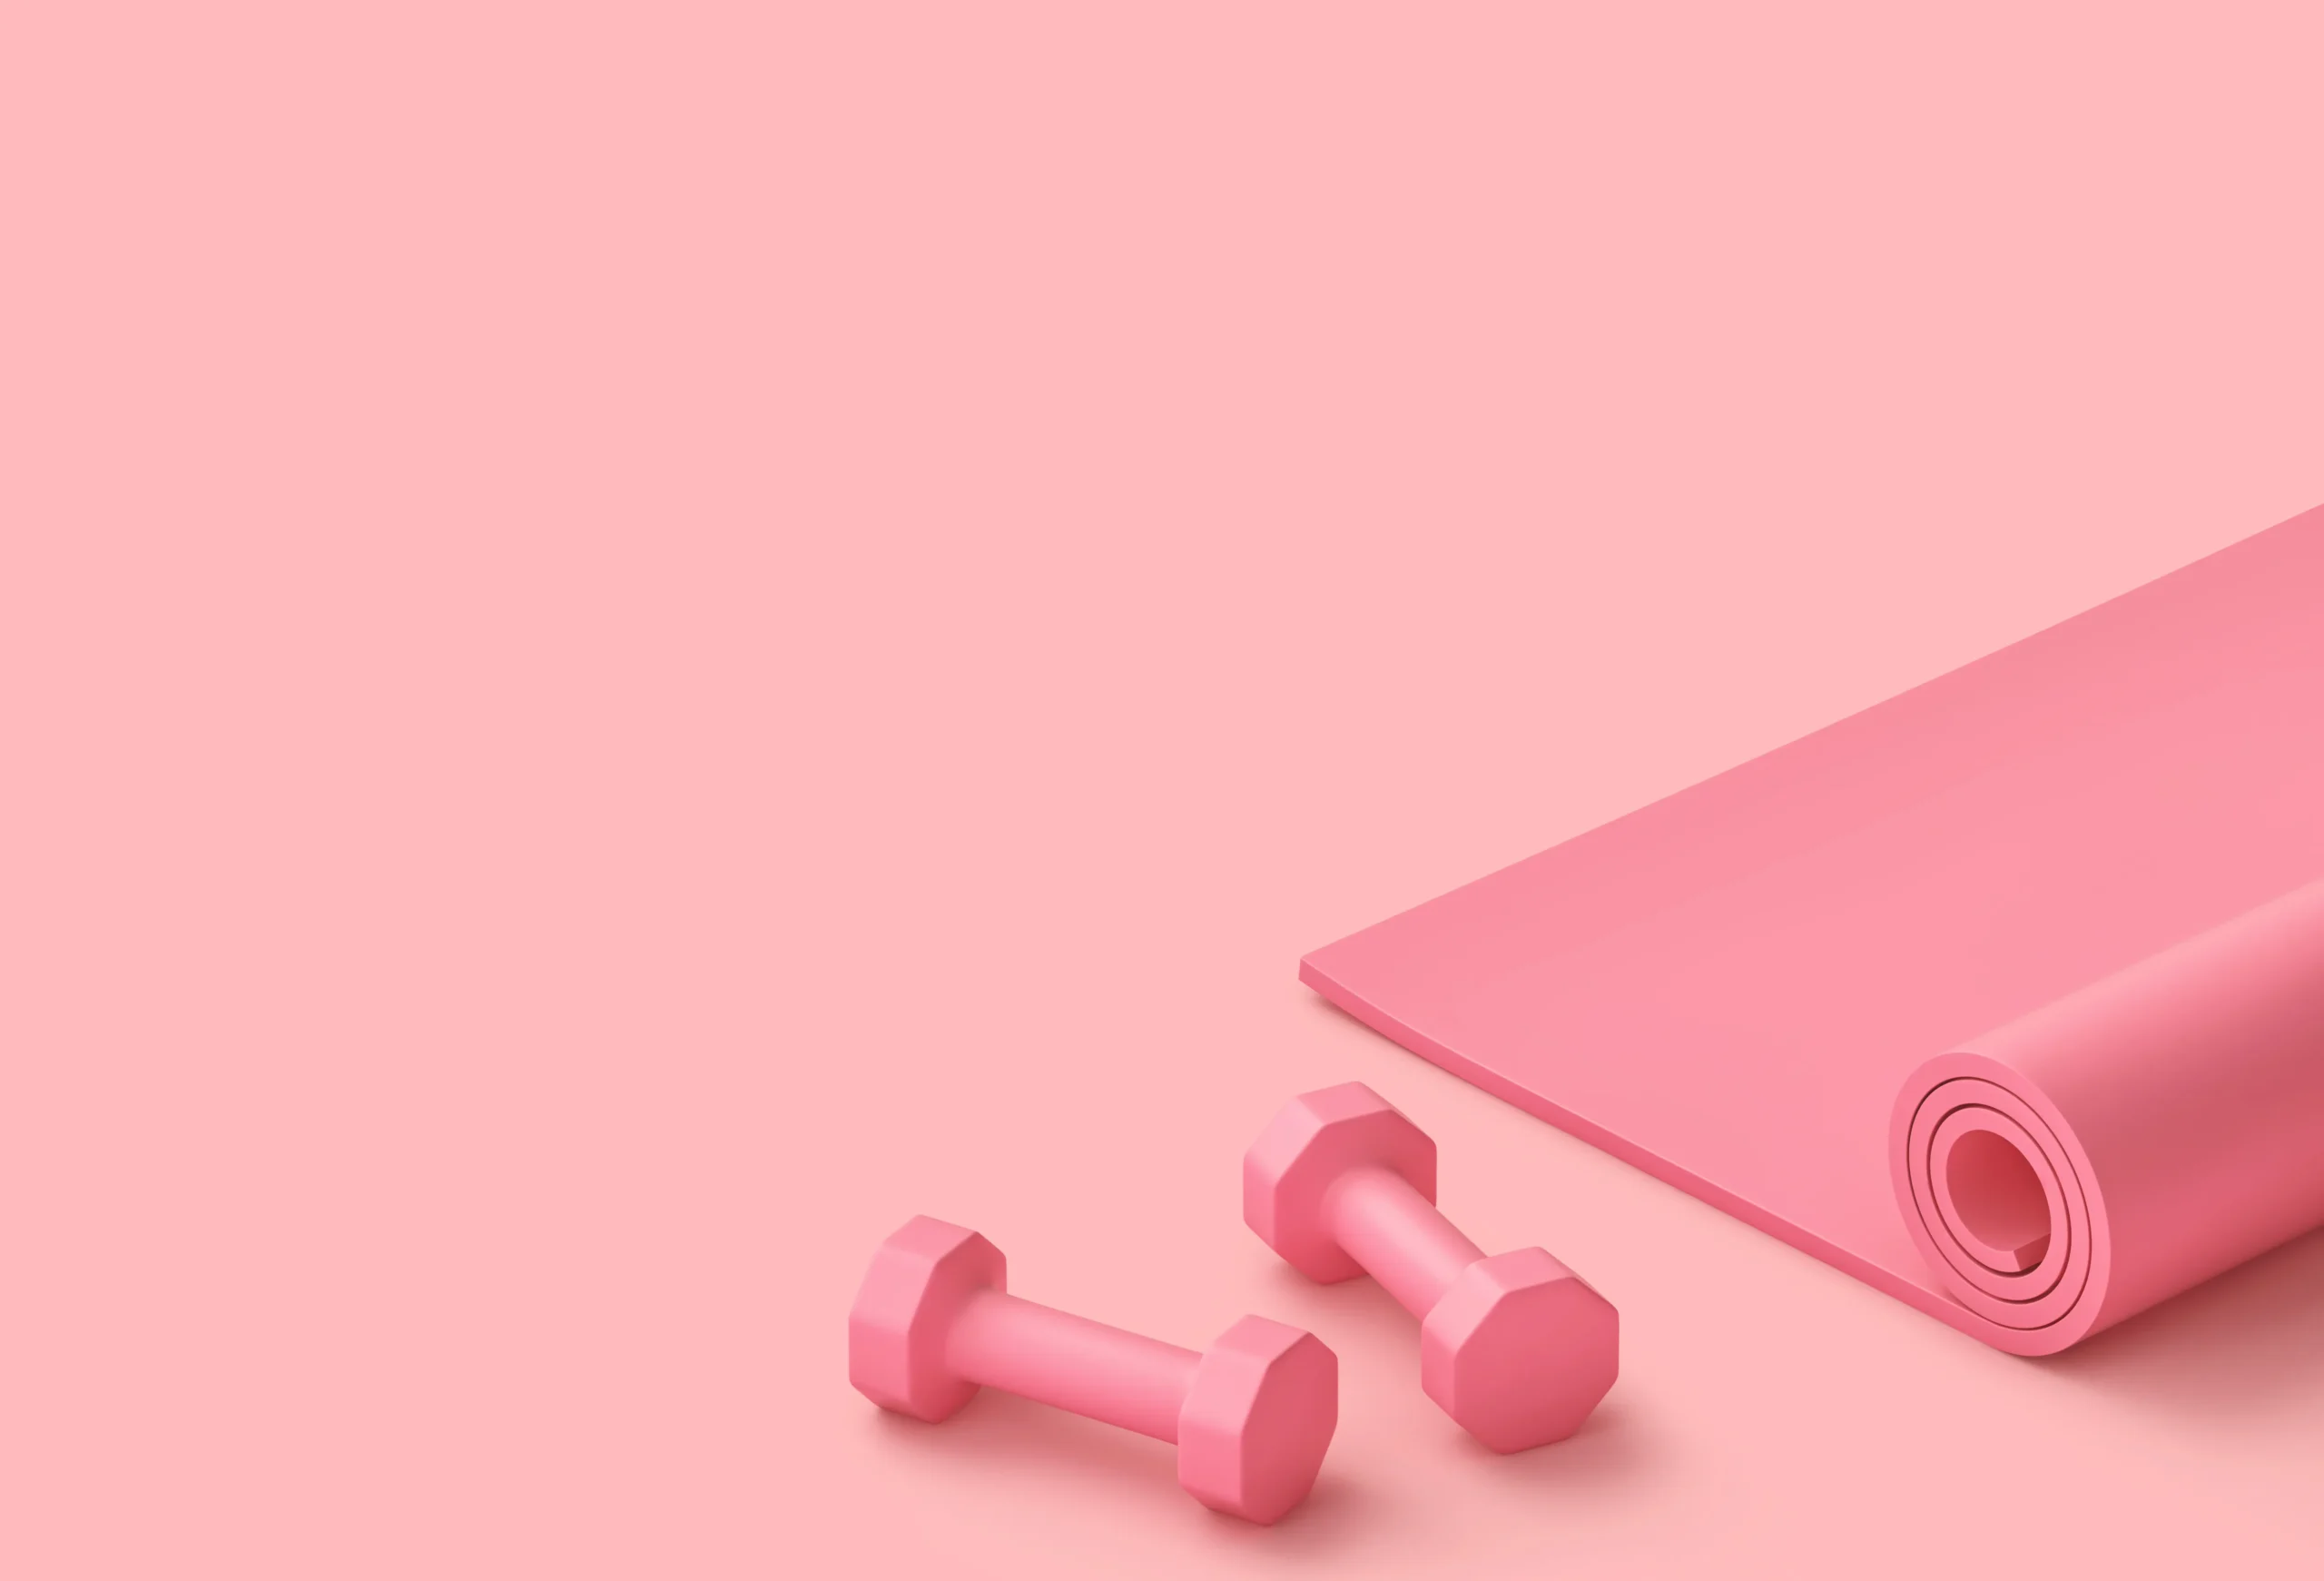 StrongHer fitness Wijchen roze halters en roze foam roll mat op roze vloer